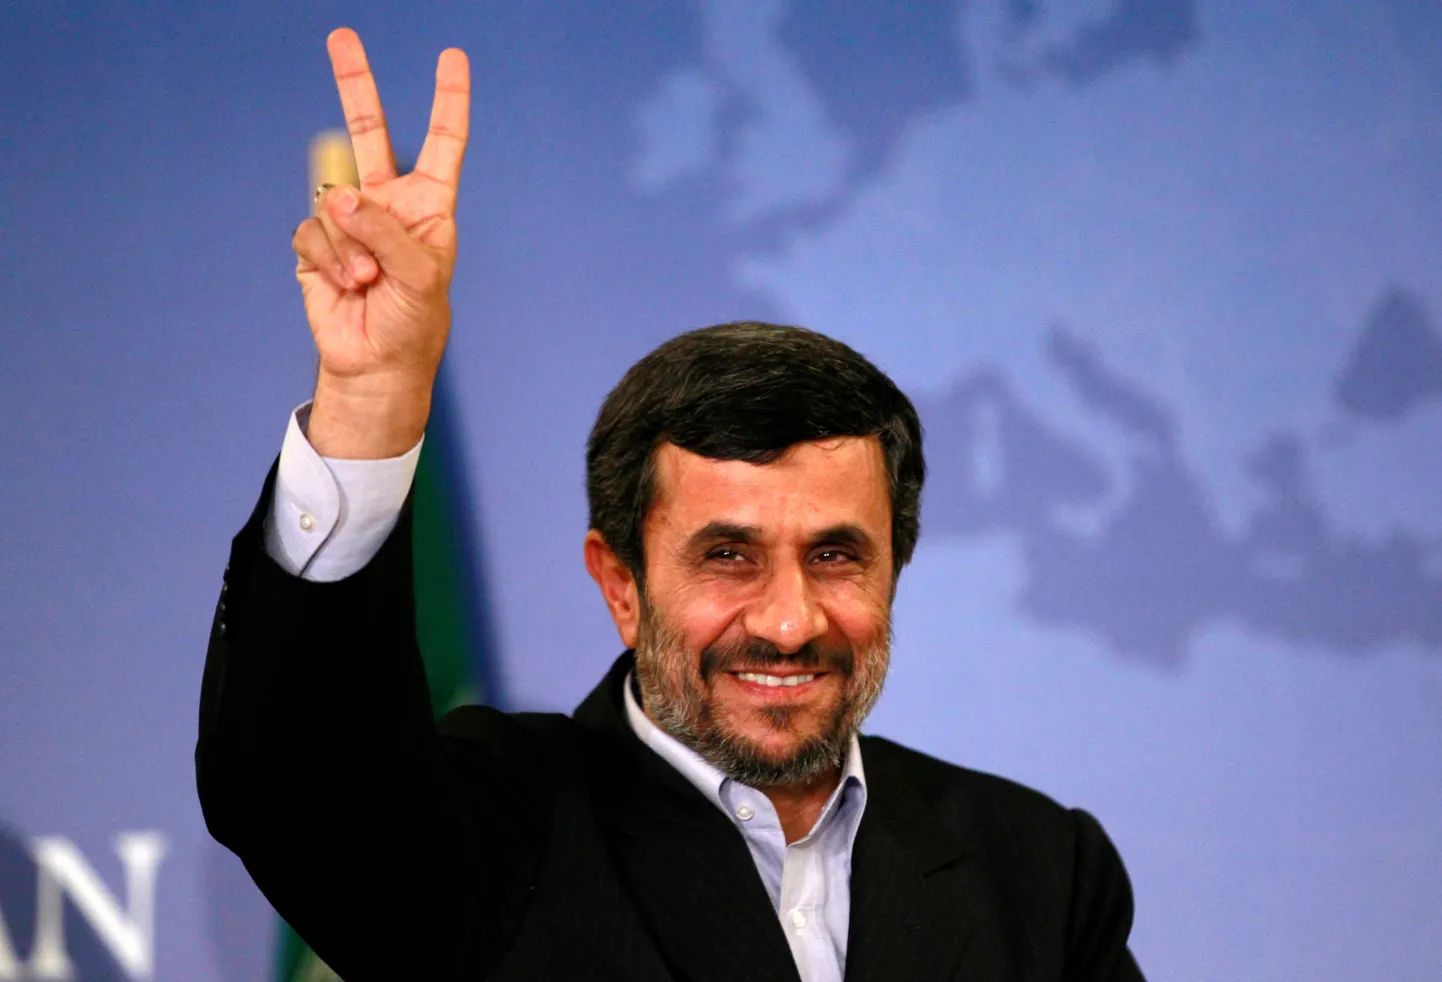 Iraani endine president Mahmoud Ahmadinejad ei olnud samuti suurem pintsakute ja formaalsete riiete fänn.